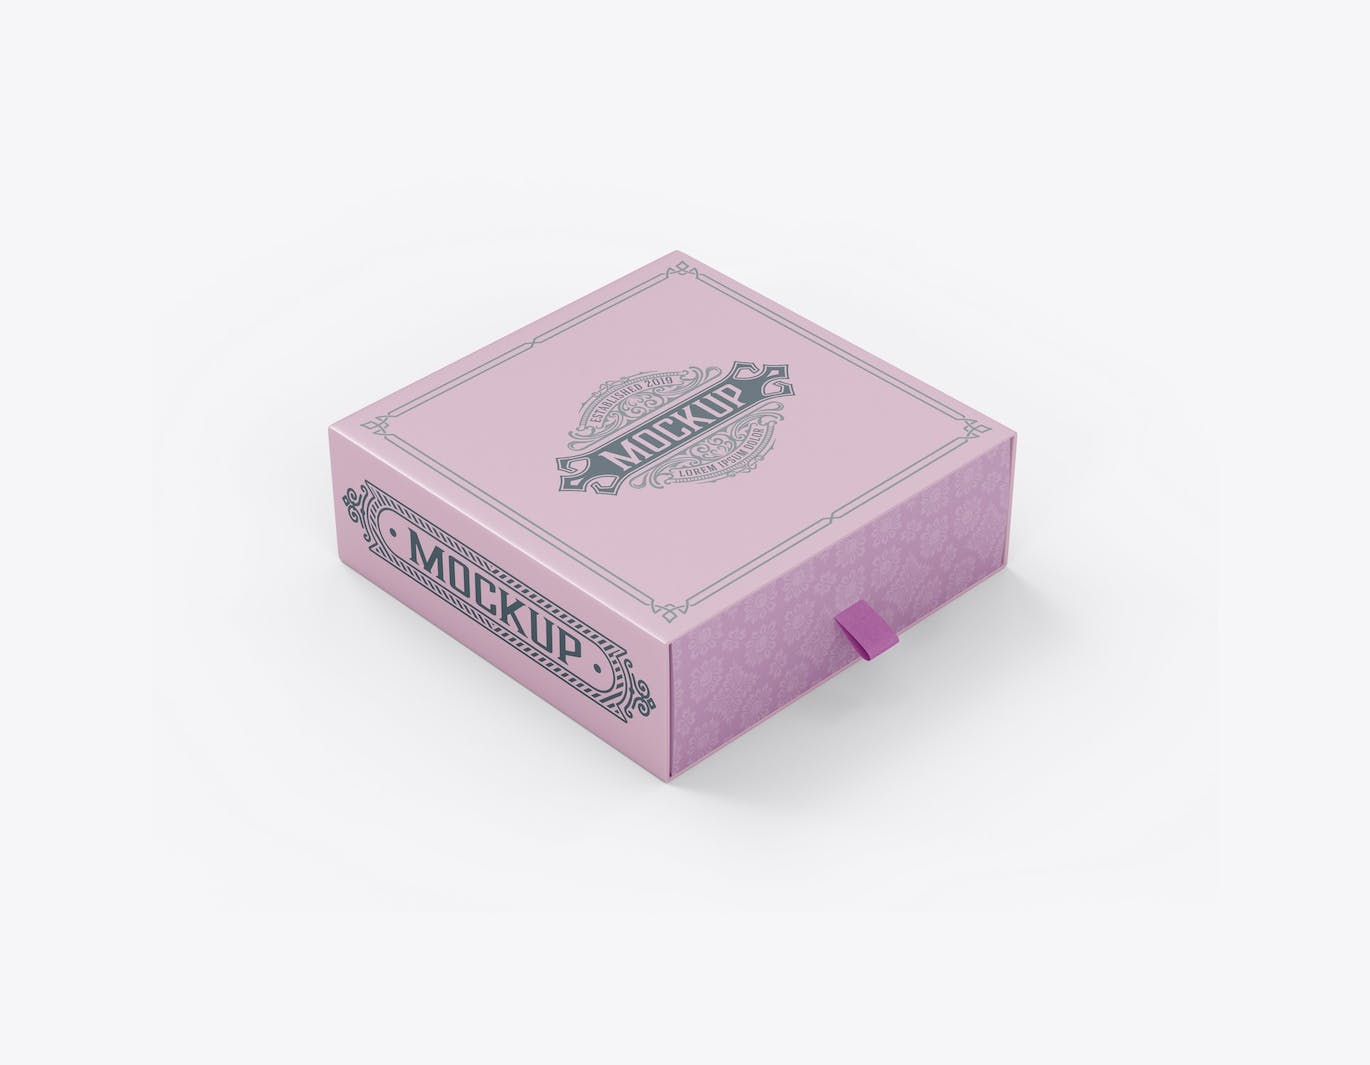 拖式纸盒包装设计样机 SlideBox Mockup 样机素材 第12张